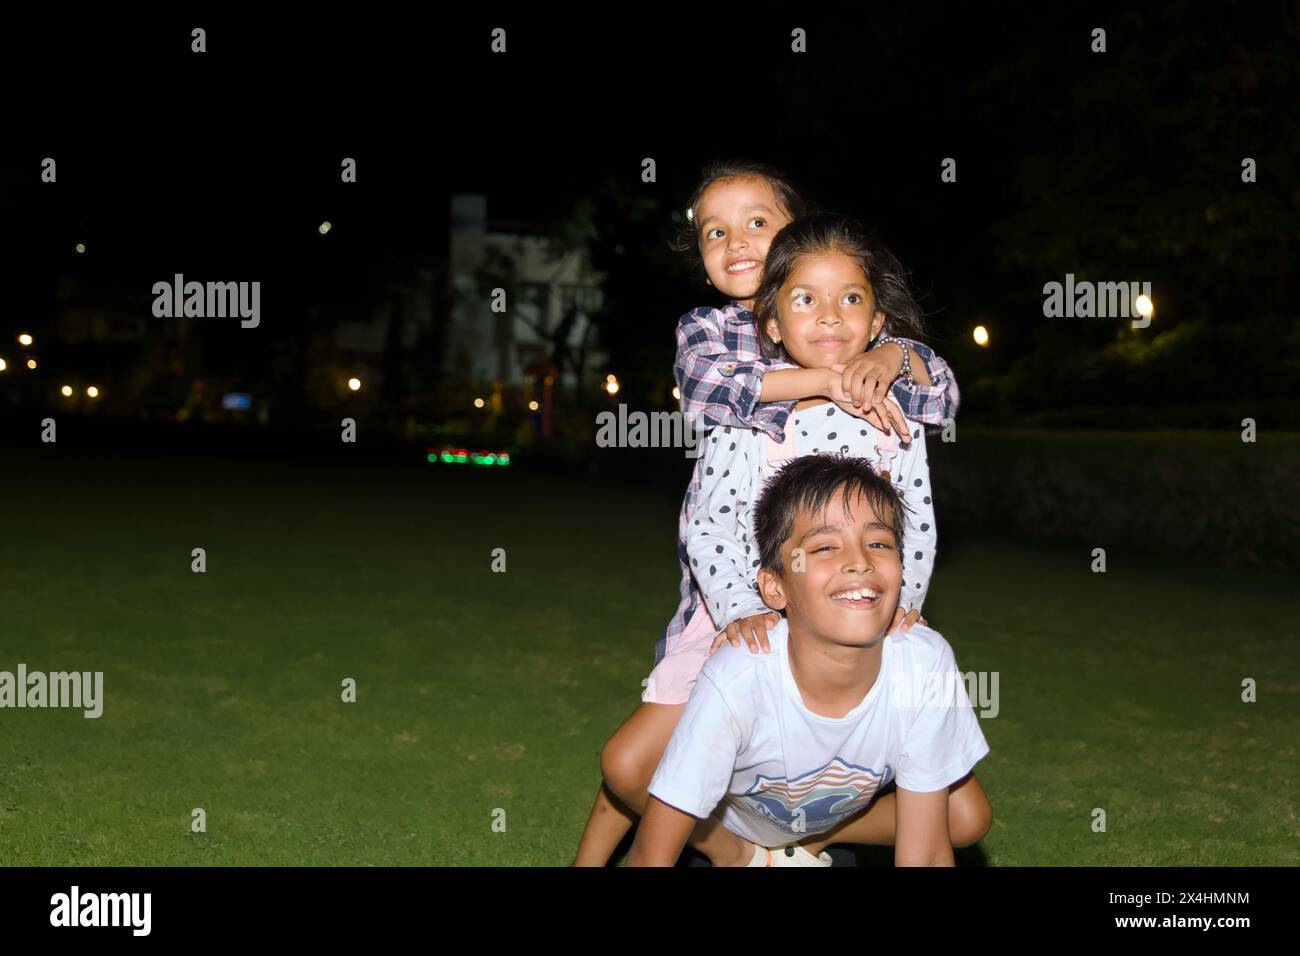 Dieses Bild ist von glücklichen drei Kindern, die zusammen im Park bei Nacht Lifestyle Concept spielen Stockfoto